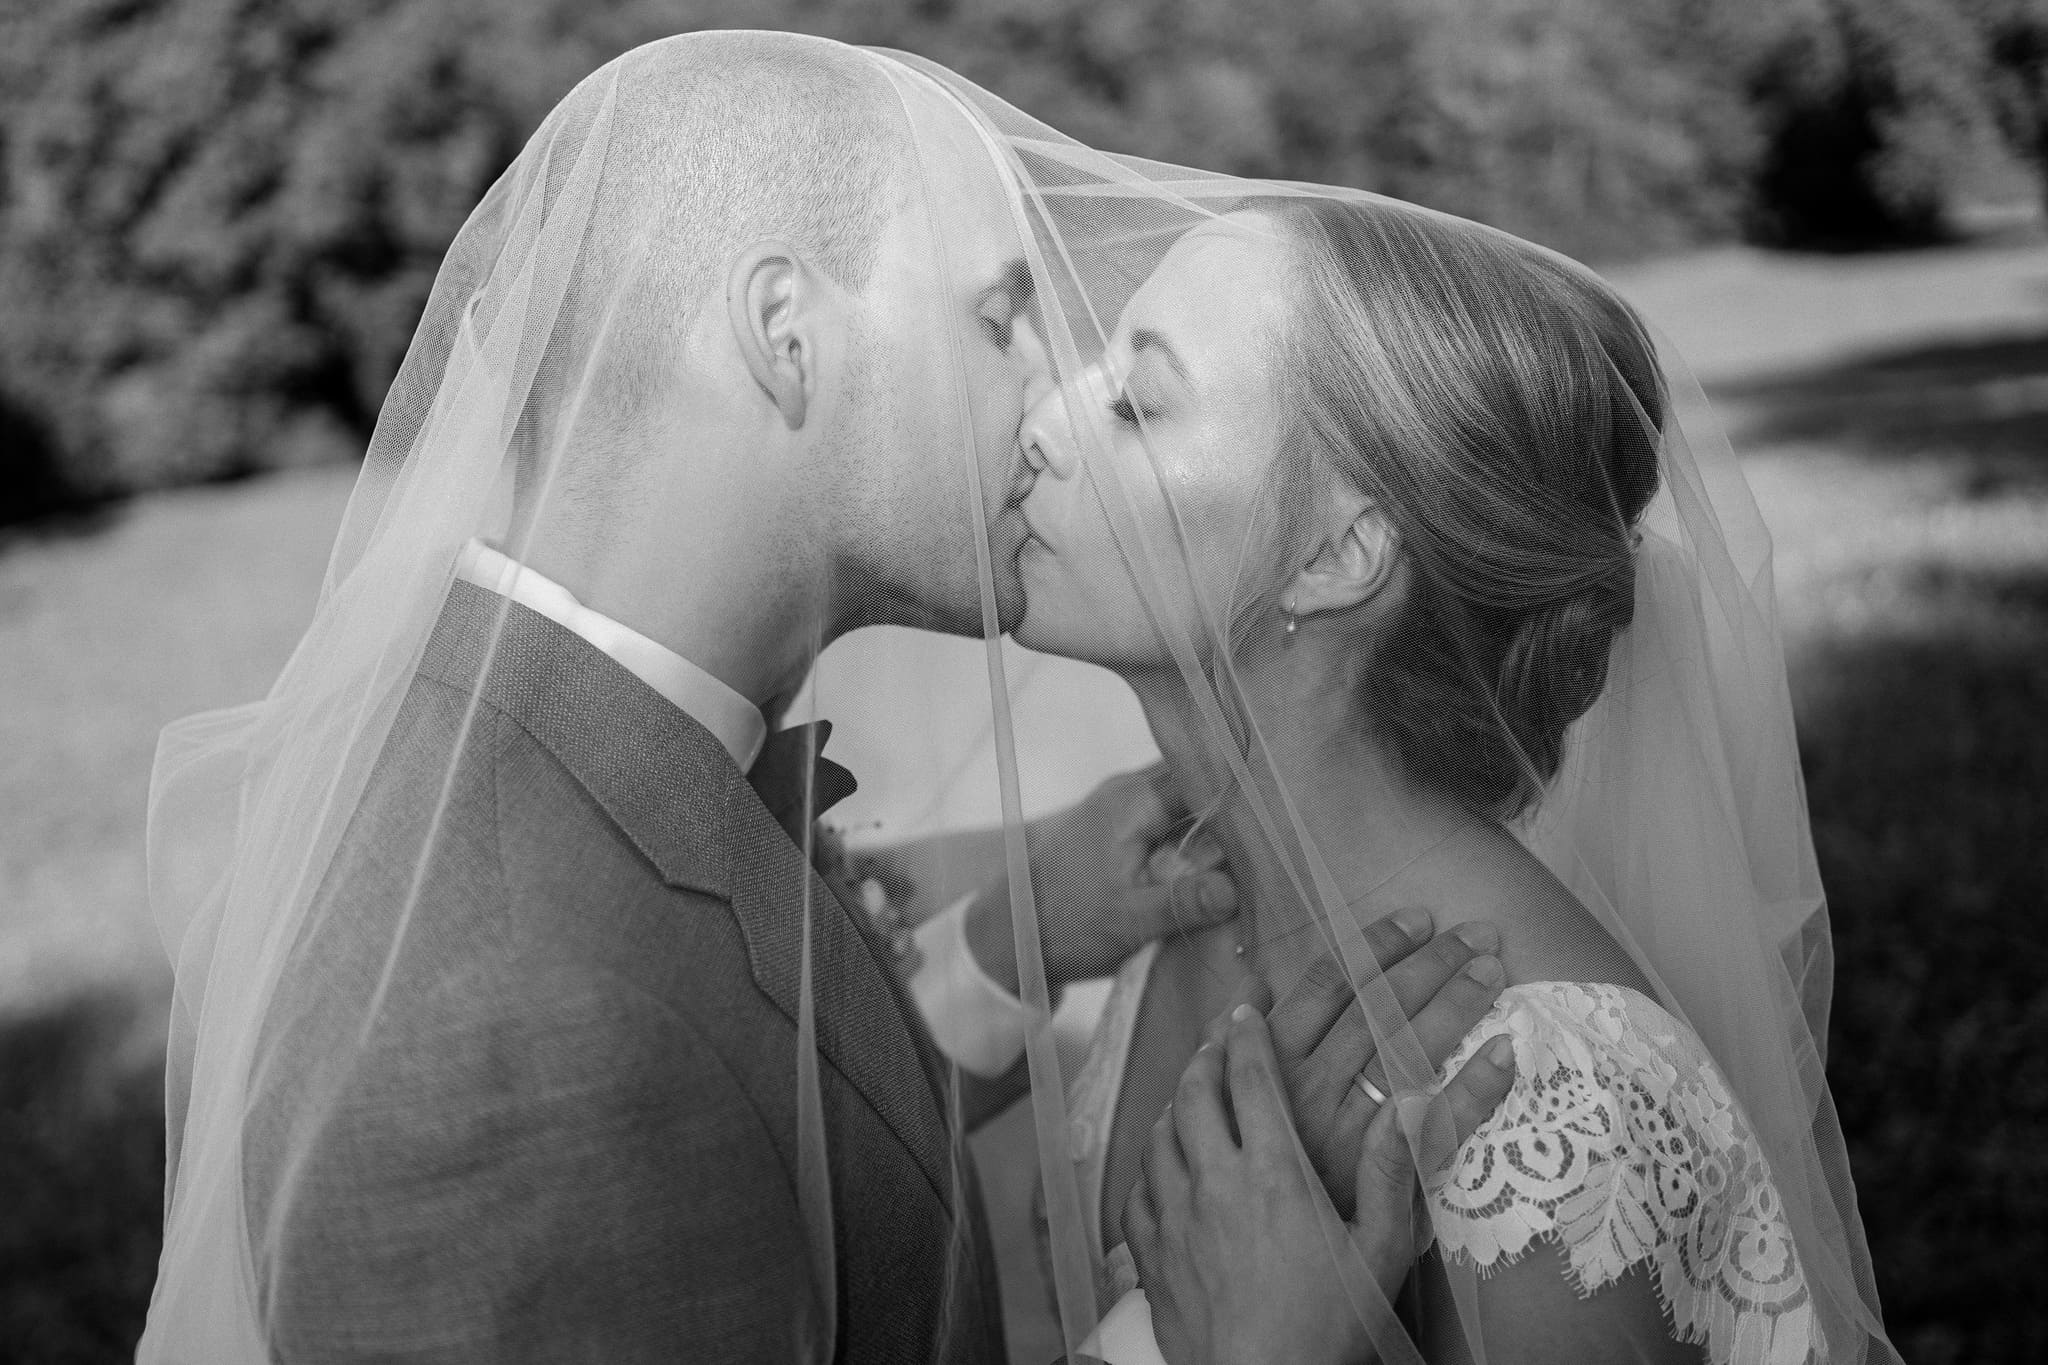 Ein emotionales Hochzeitsfoto in Schwarz-Weiß zeigt einen Bräutigam und eine Braut, die sich einen sanften Kuss geben, eingehüllt in den Schleier der Braut mit einer weichen, natürlichen Landschaft im Hintergrund.